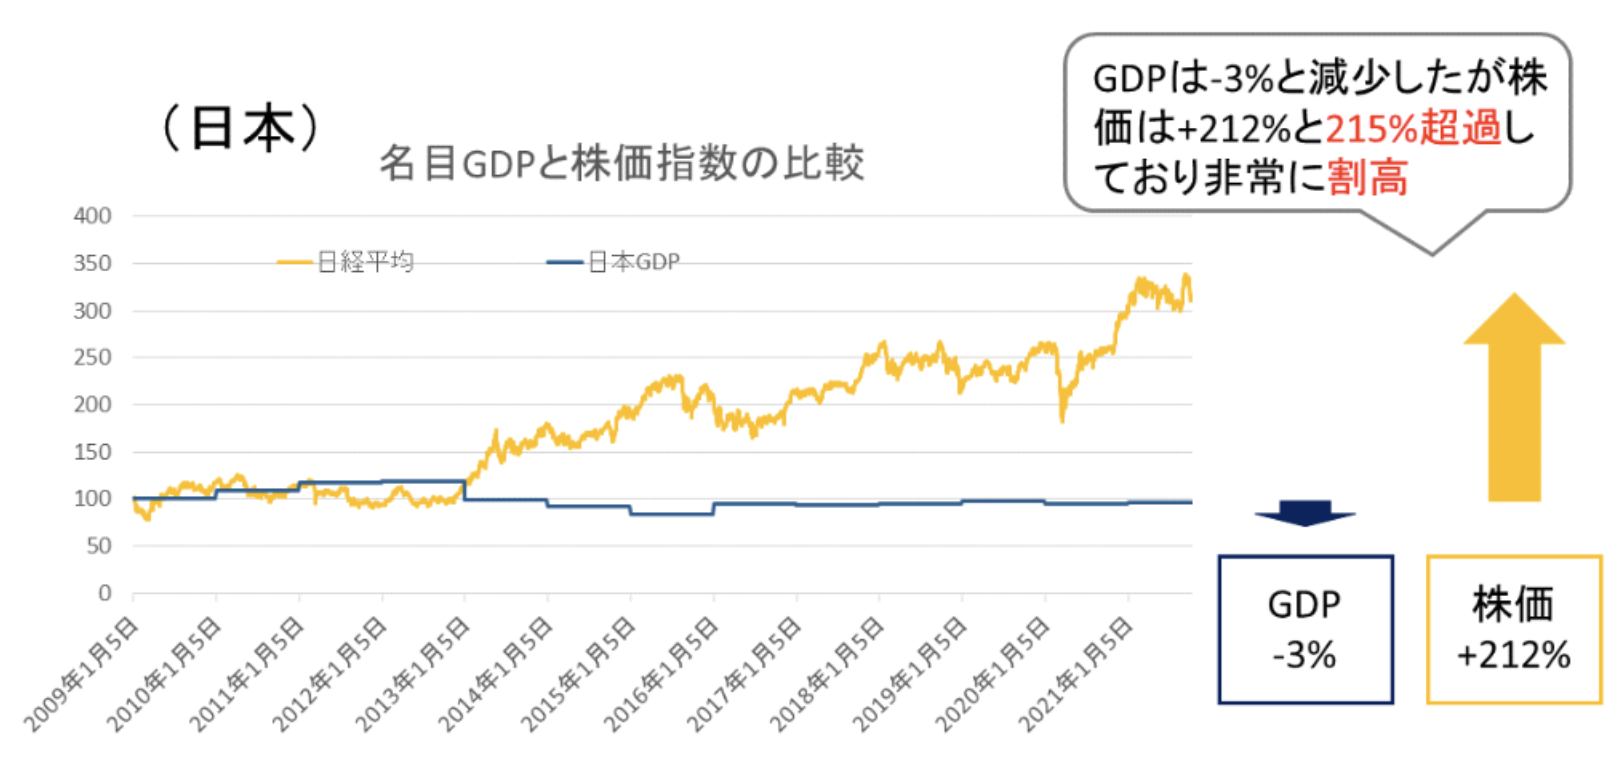 日本のGDPと日経平均の比較